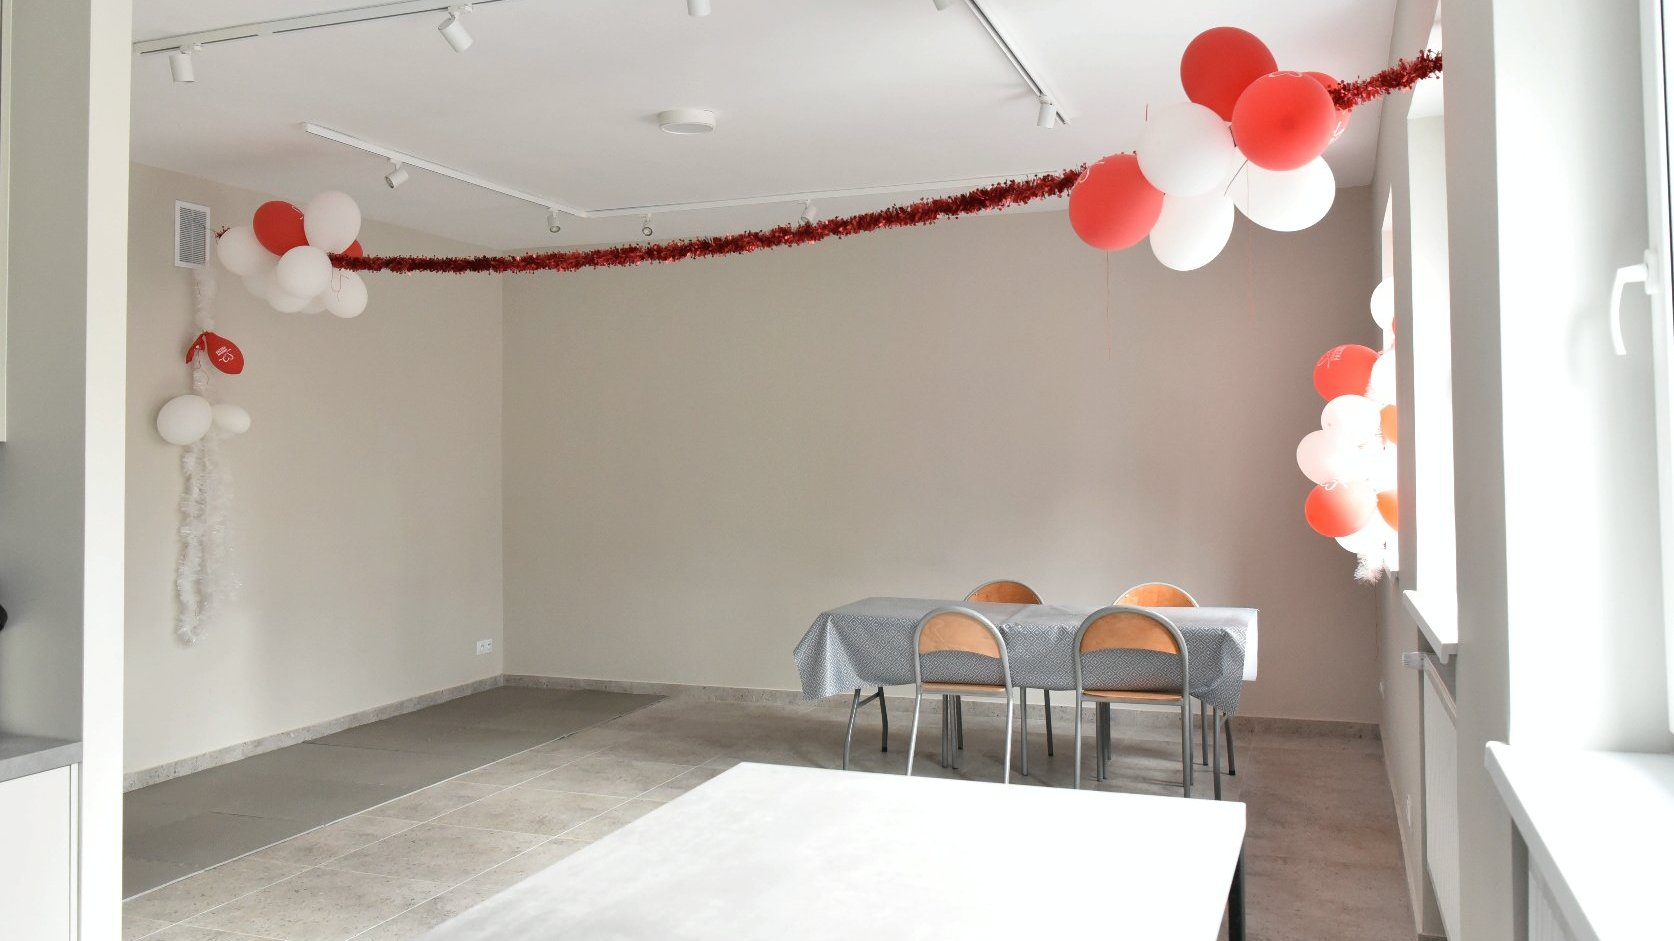 Zdjęcie przedstawia pomieszczenie świetlicy. Widać na nim balony i stoły z krzesłami.